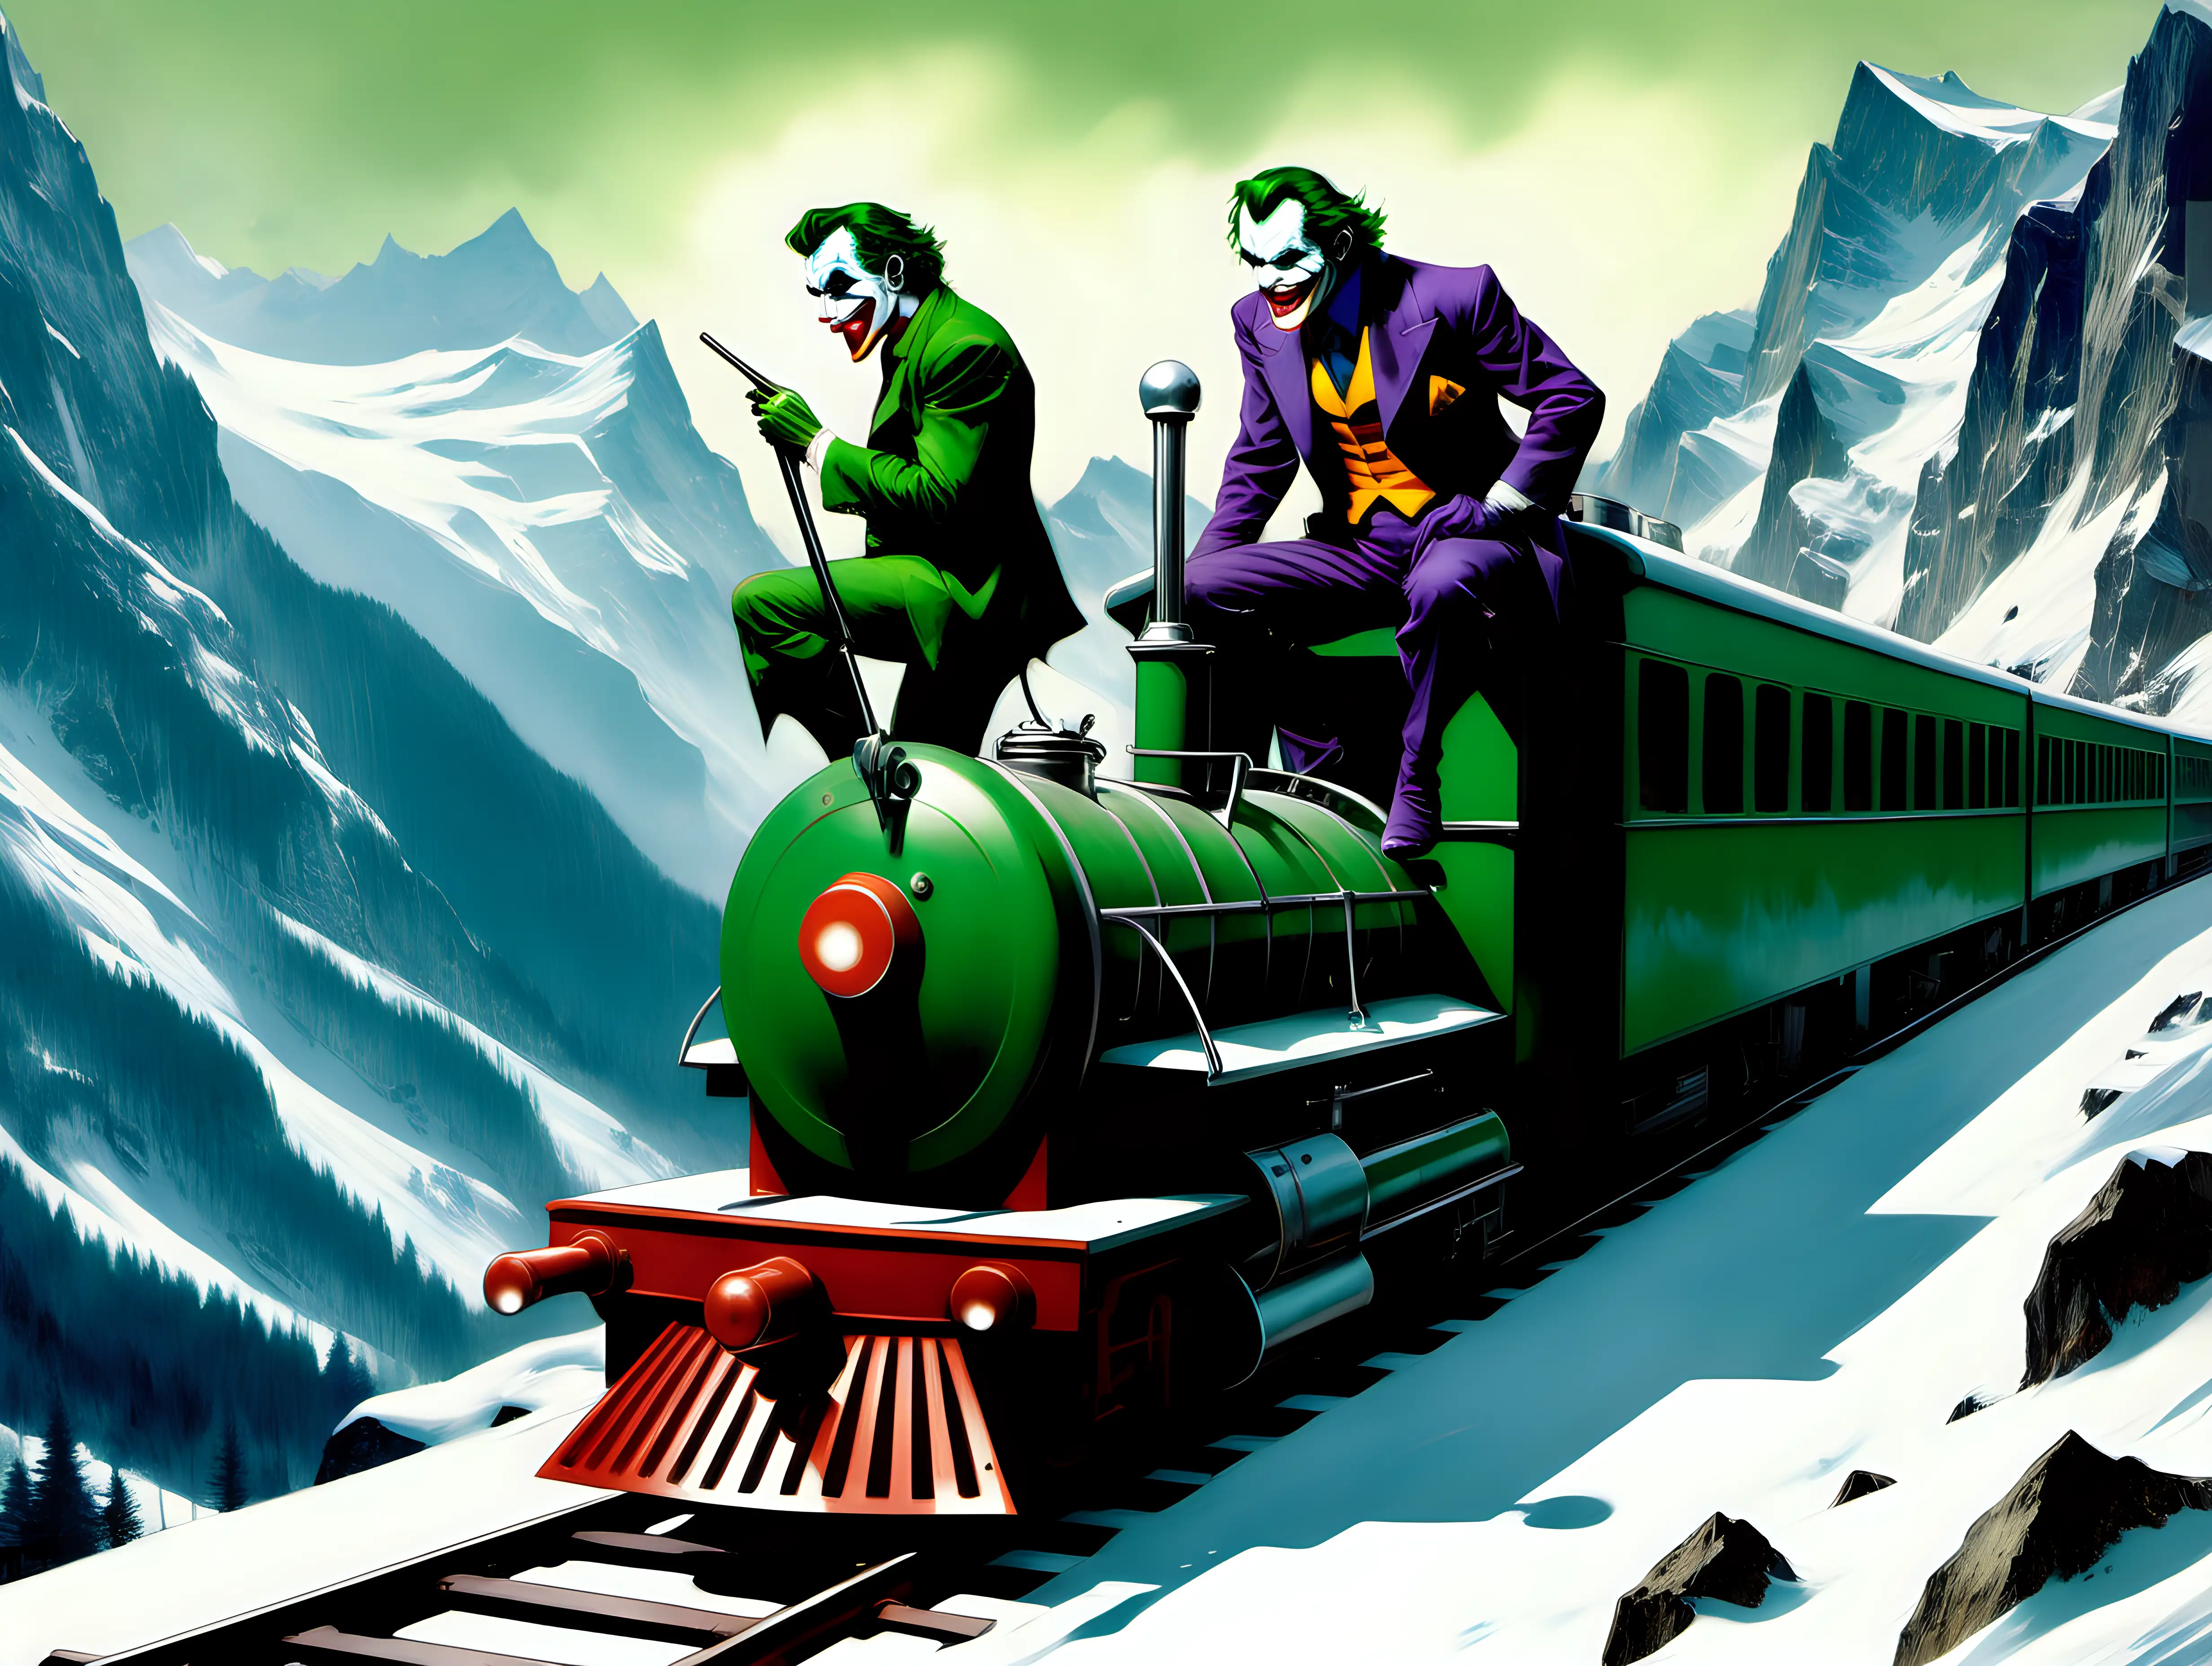 Sinister Joker Travels the Swiss Alps in Frank Frazetta Style